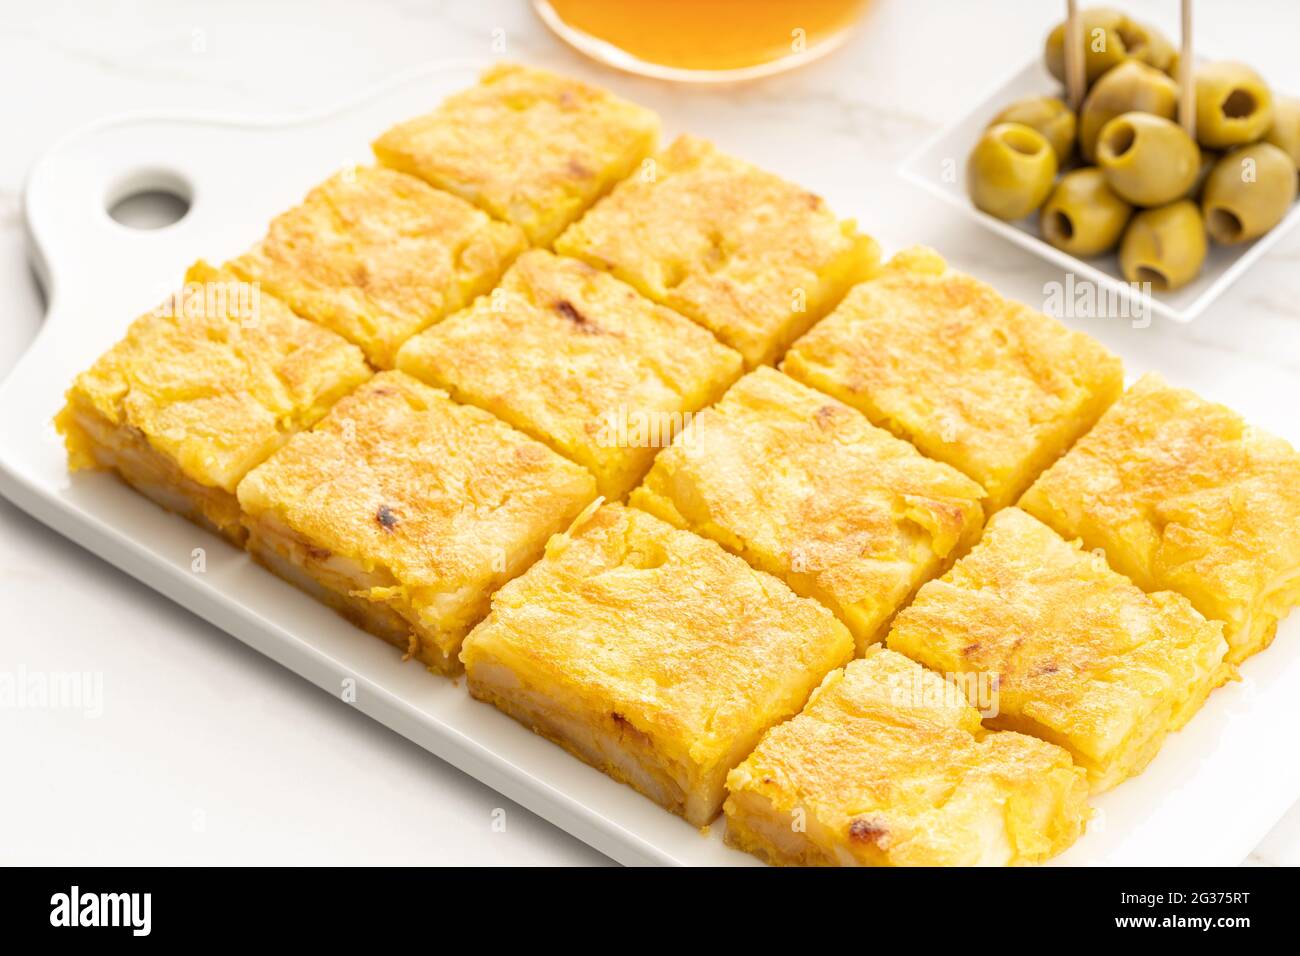 L'apéritif à omelette espagnole appelée tortilla espagnole sur une table en marbre. Tapa typiquement espagnol Banque D'Images